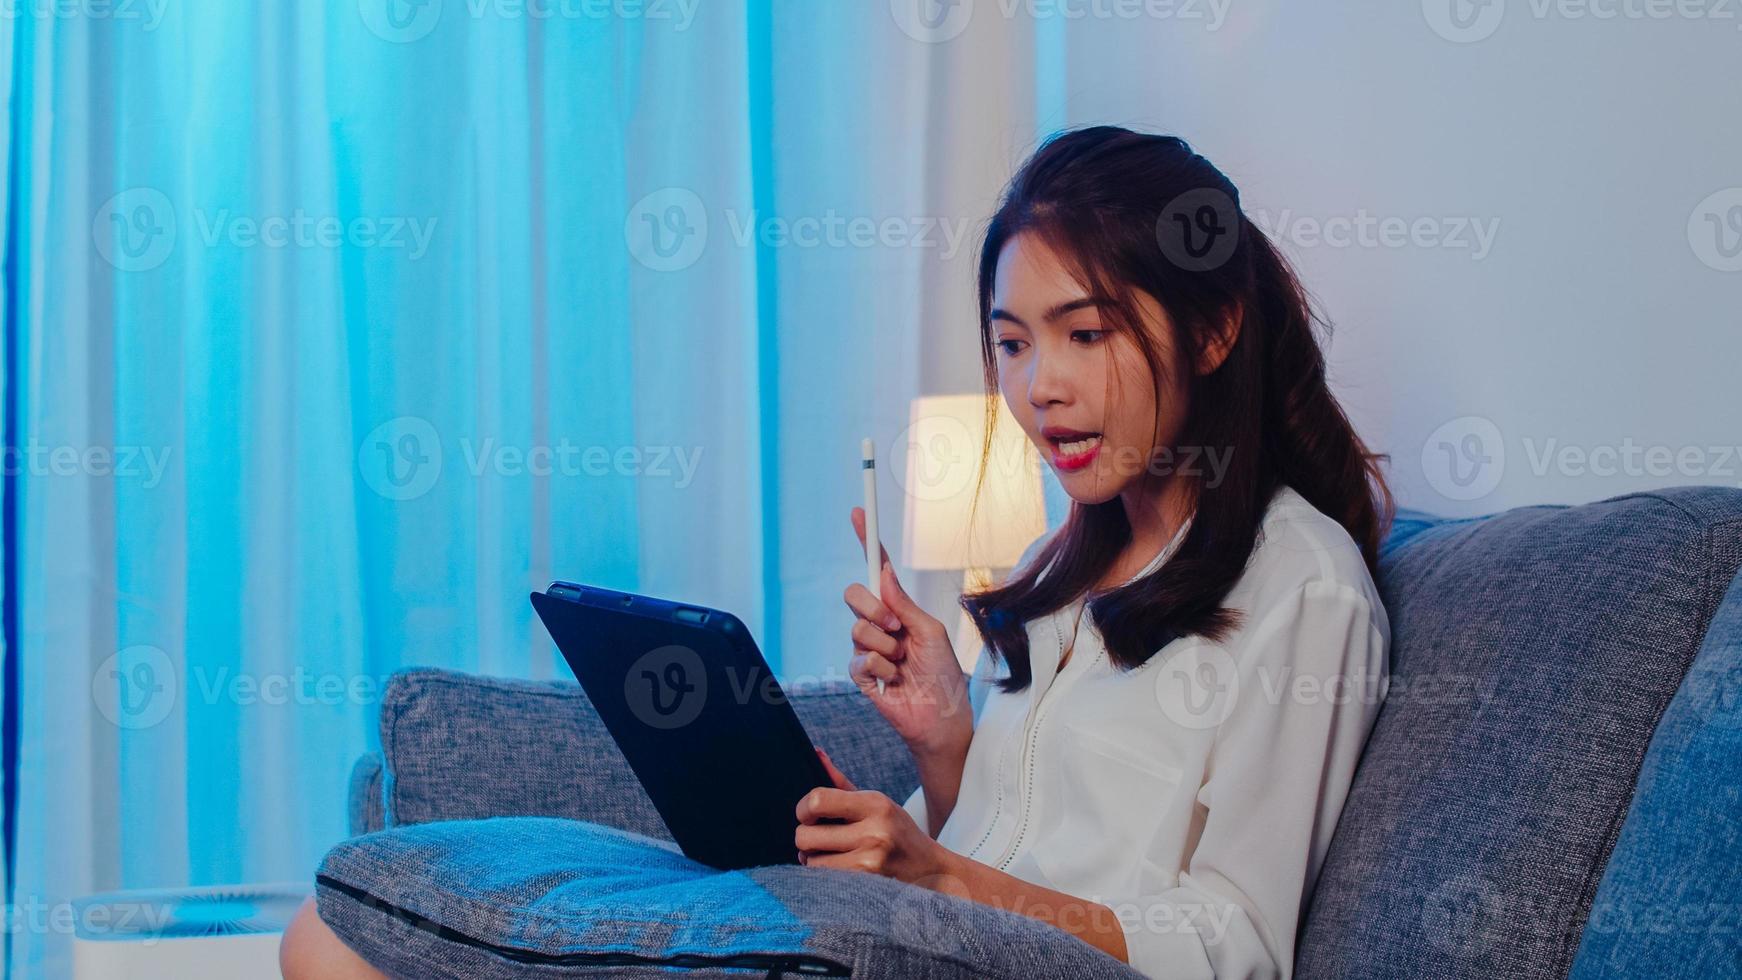 donna d'affari asiatica che utilizza tablet parla con i colleghi del piano in videochiamata mentre lavora da casa in soggiorno di notte. autoisolamento, distanziamento sociale, quarantena per la prevenzione del coronavirus. foto